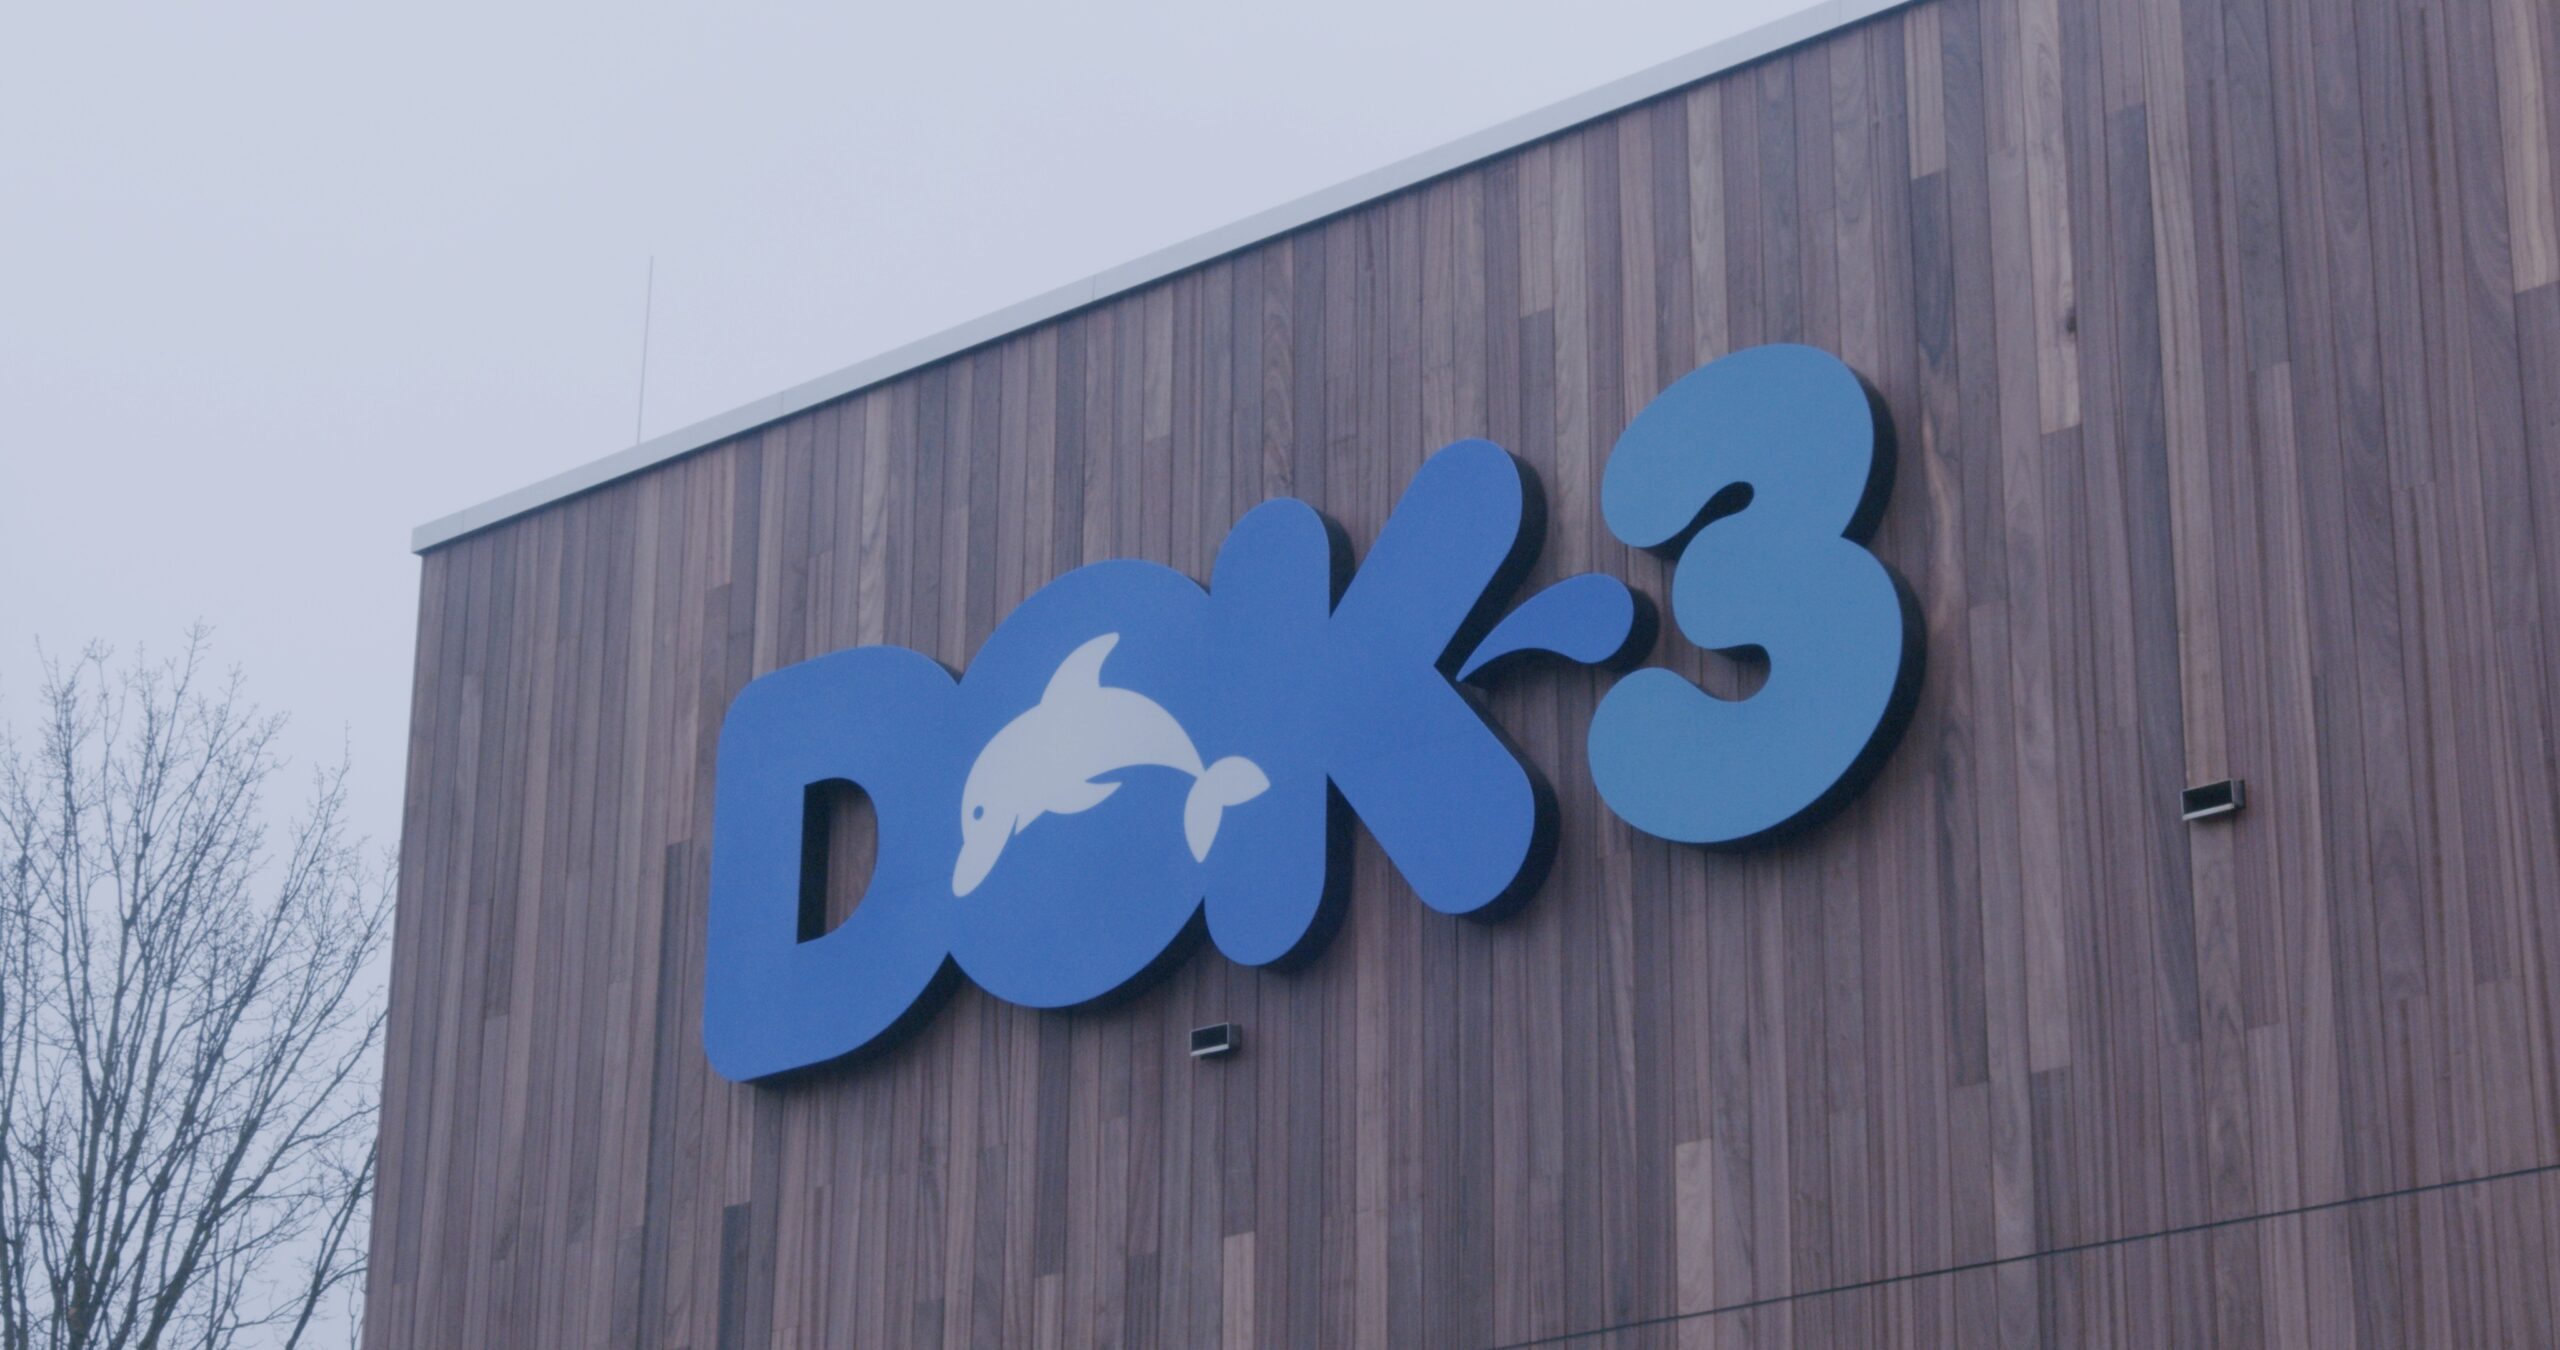 Rik De Wilde: bedenker van de naam DOK~3